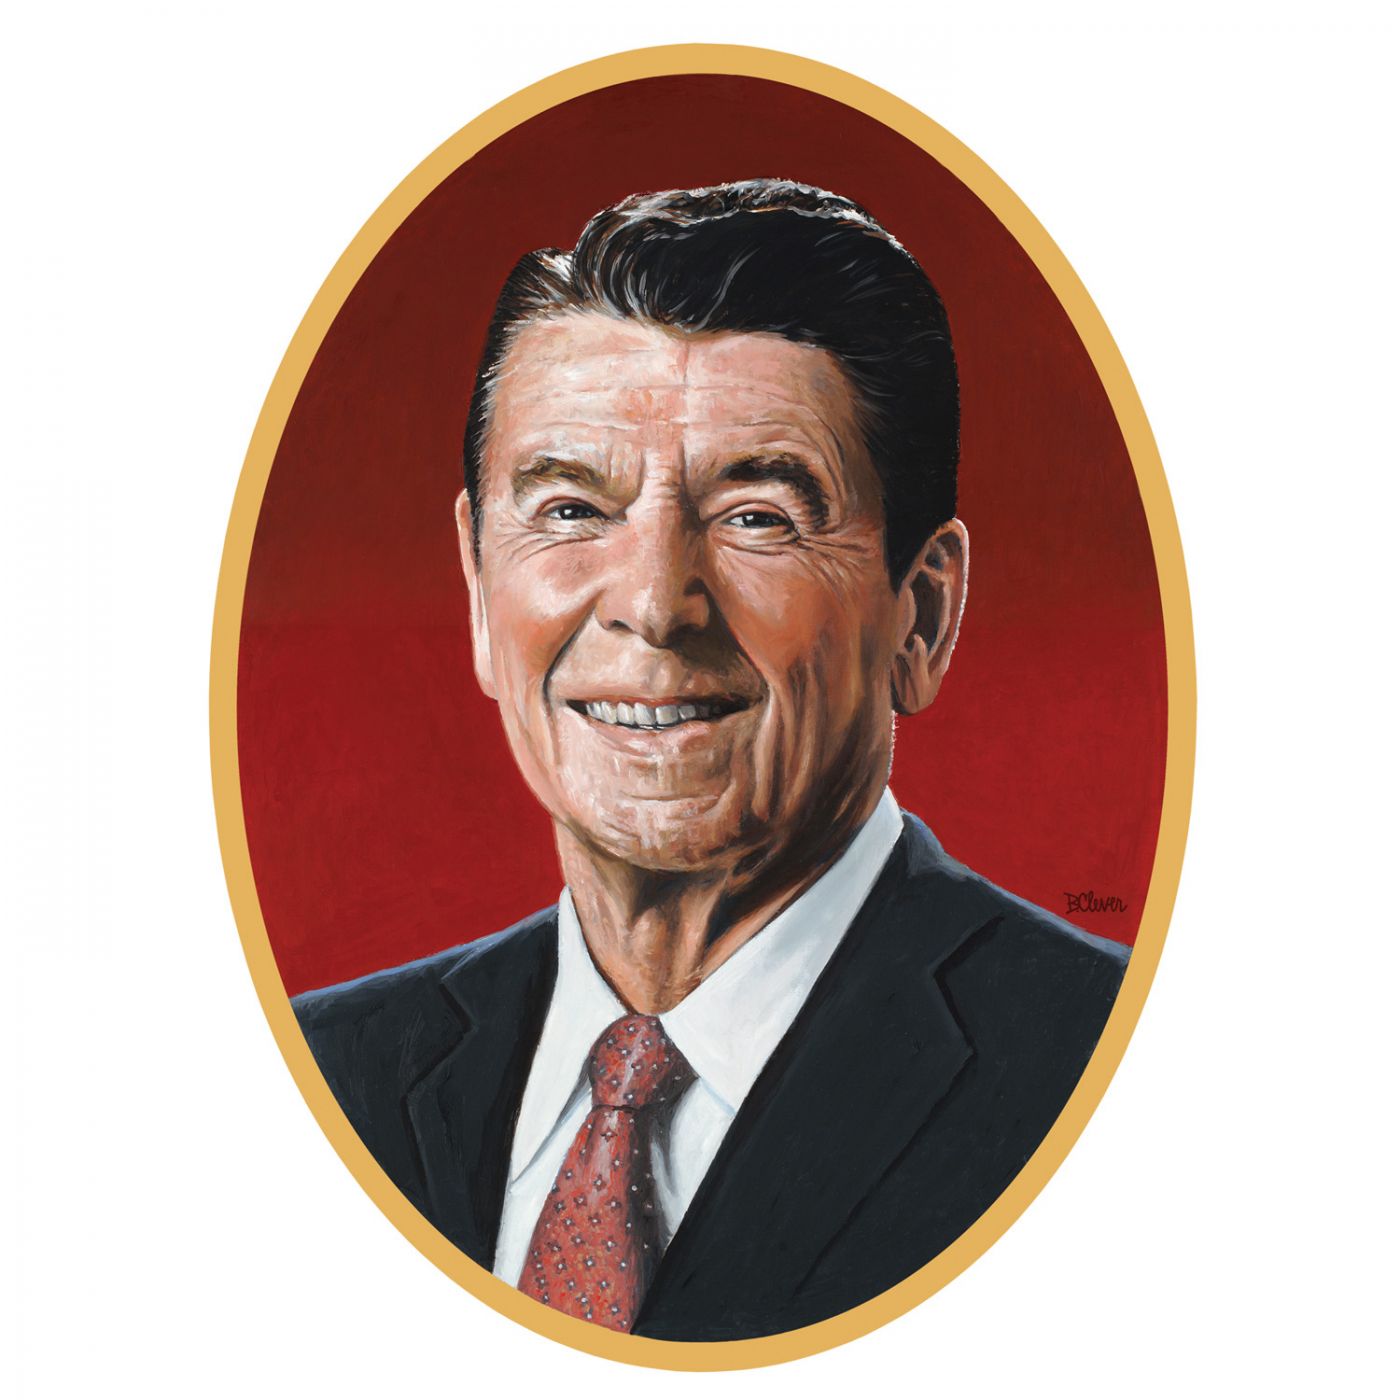 Reagan Cutout image